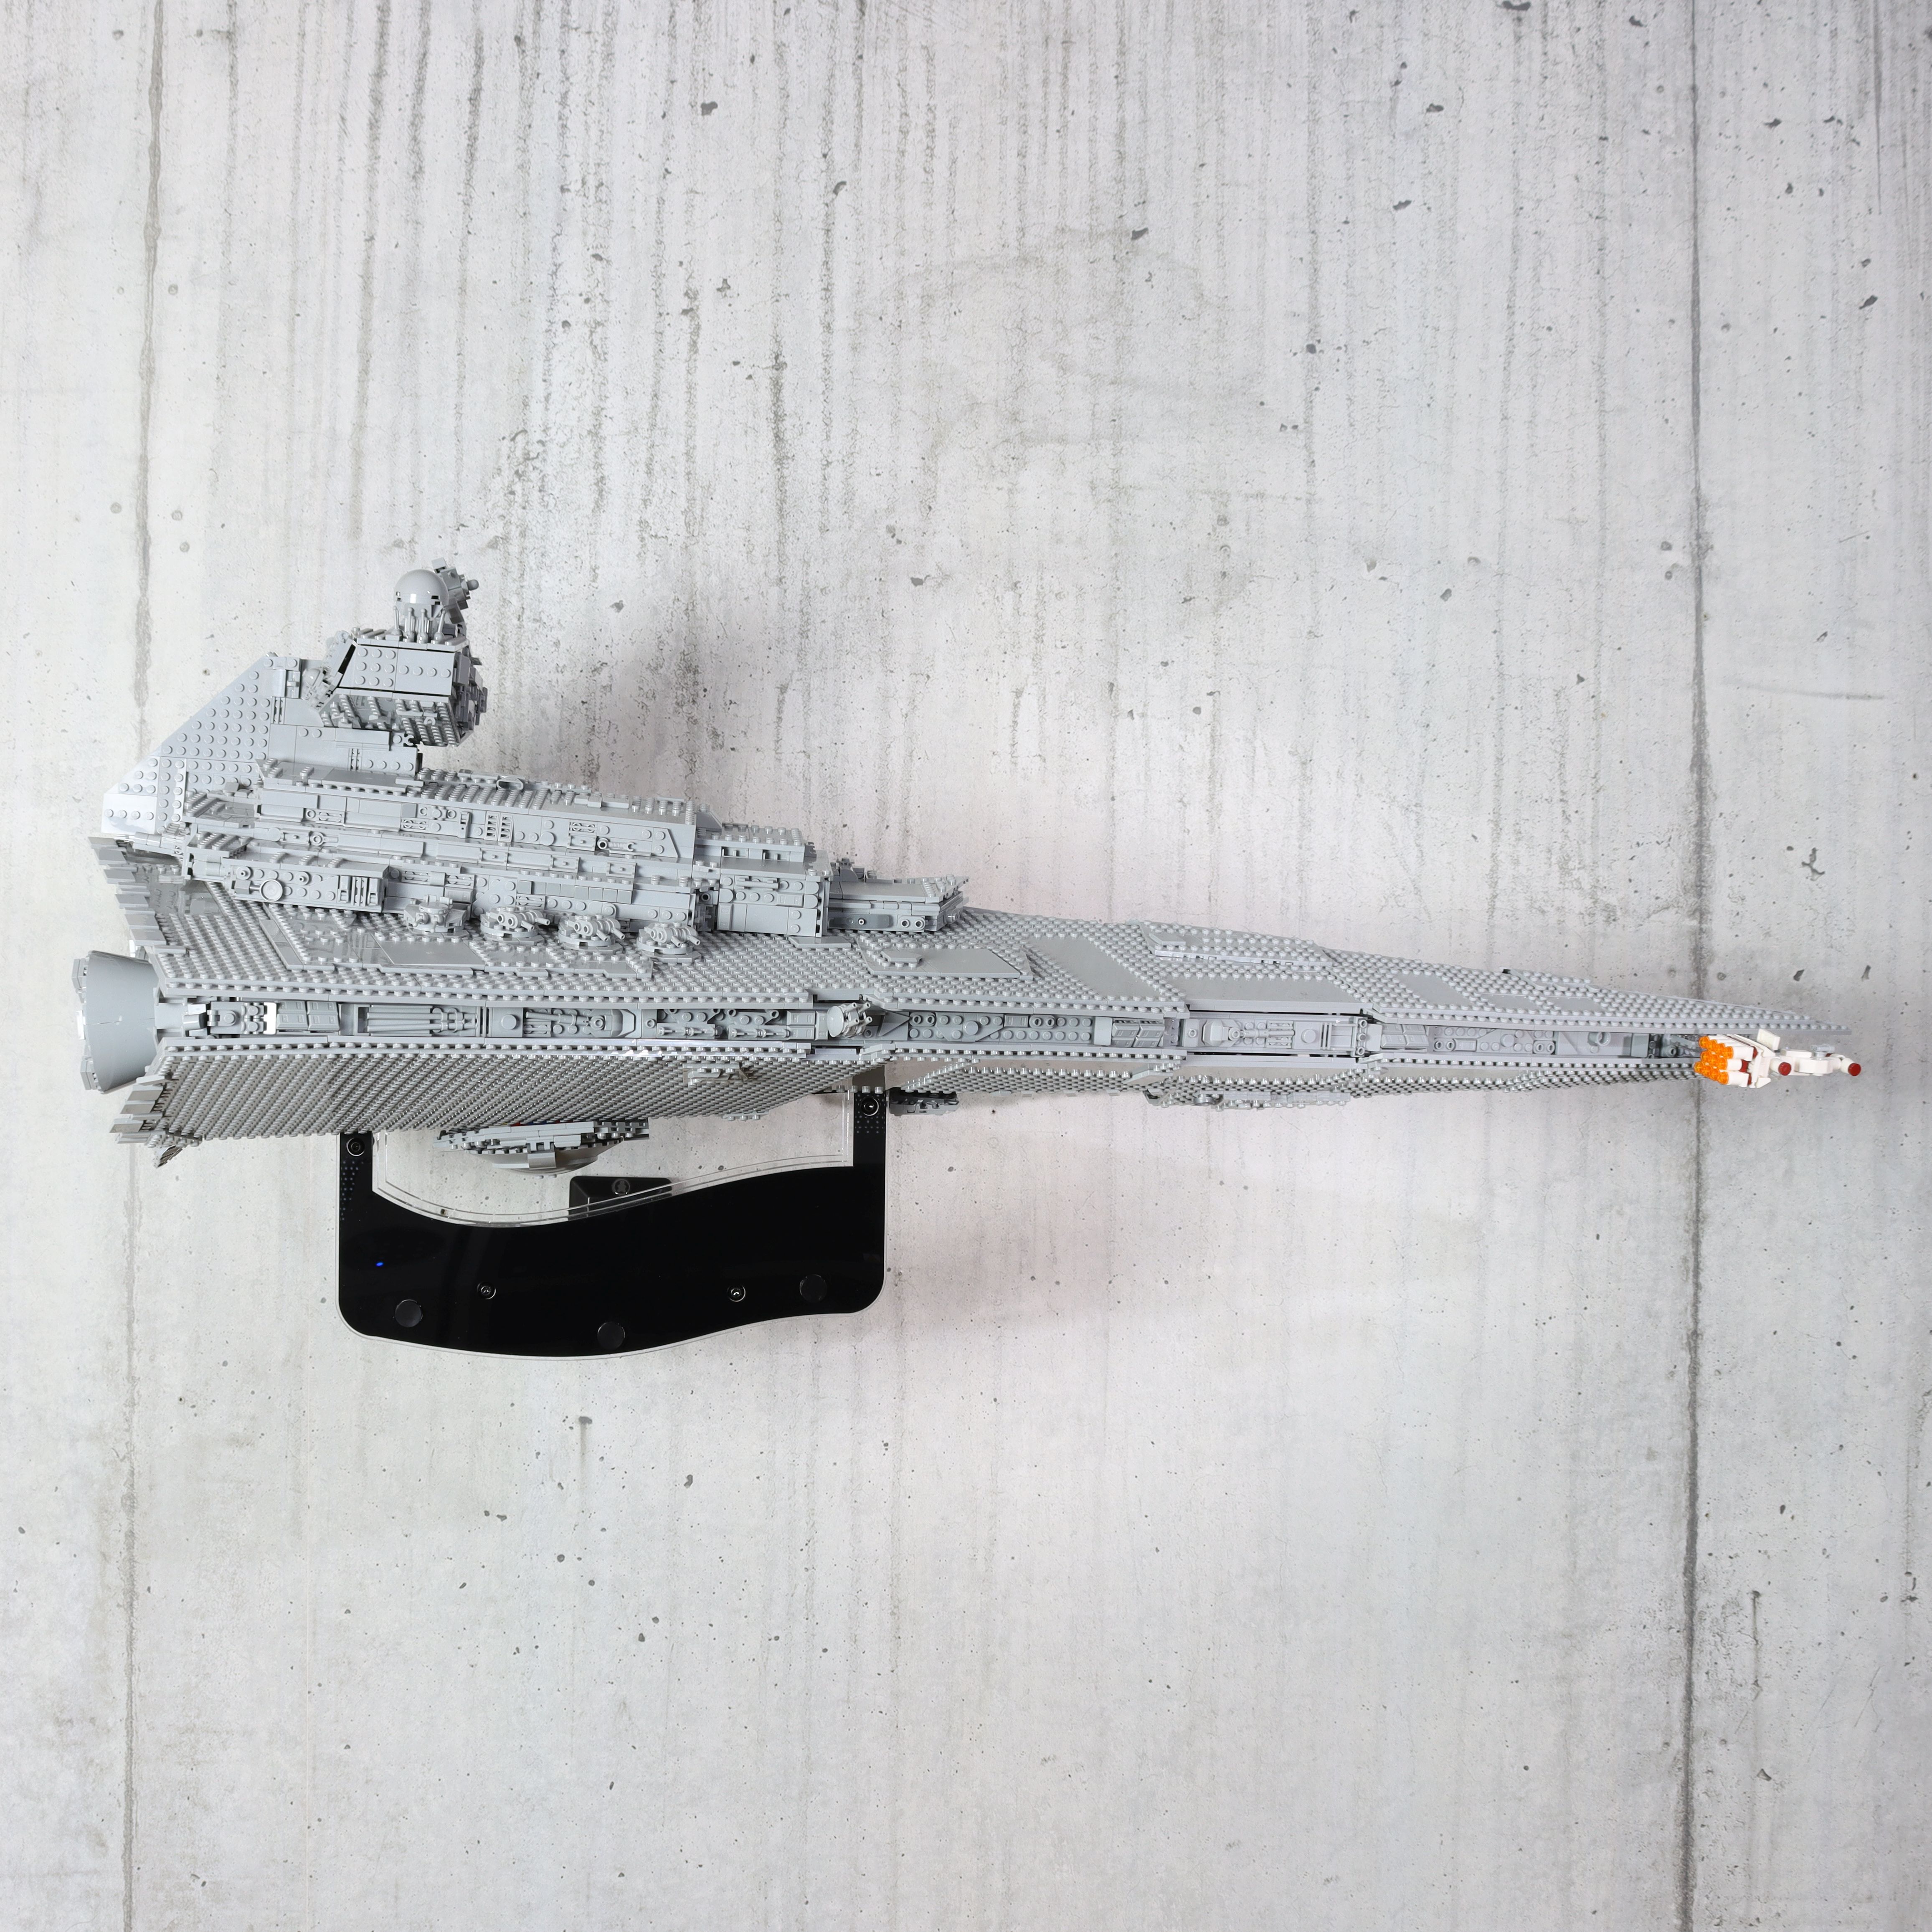 Tåler ambition Skygge FiguHolder the holder for your LEGO Imperial Star Destroyer ™ Star Wars Set  75252 - Markenwelt Voegele